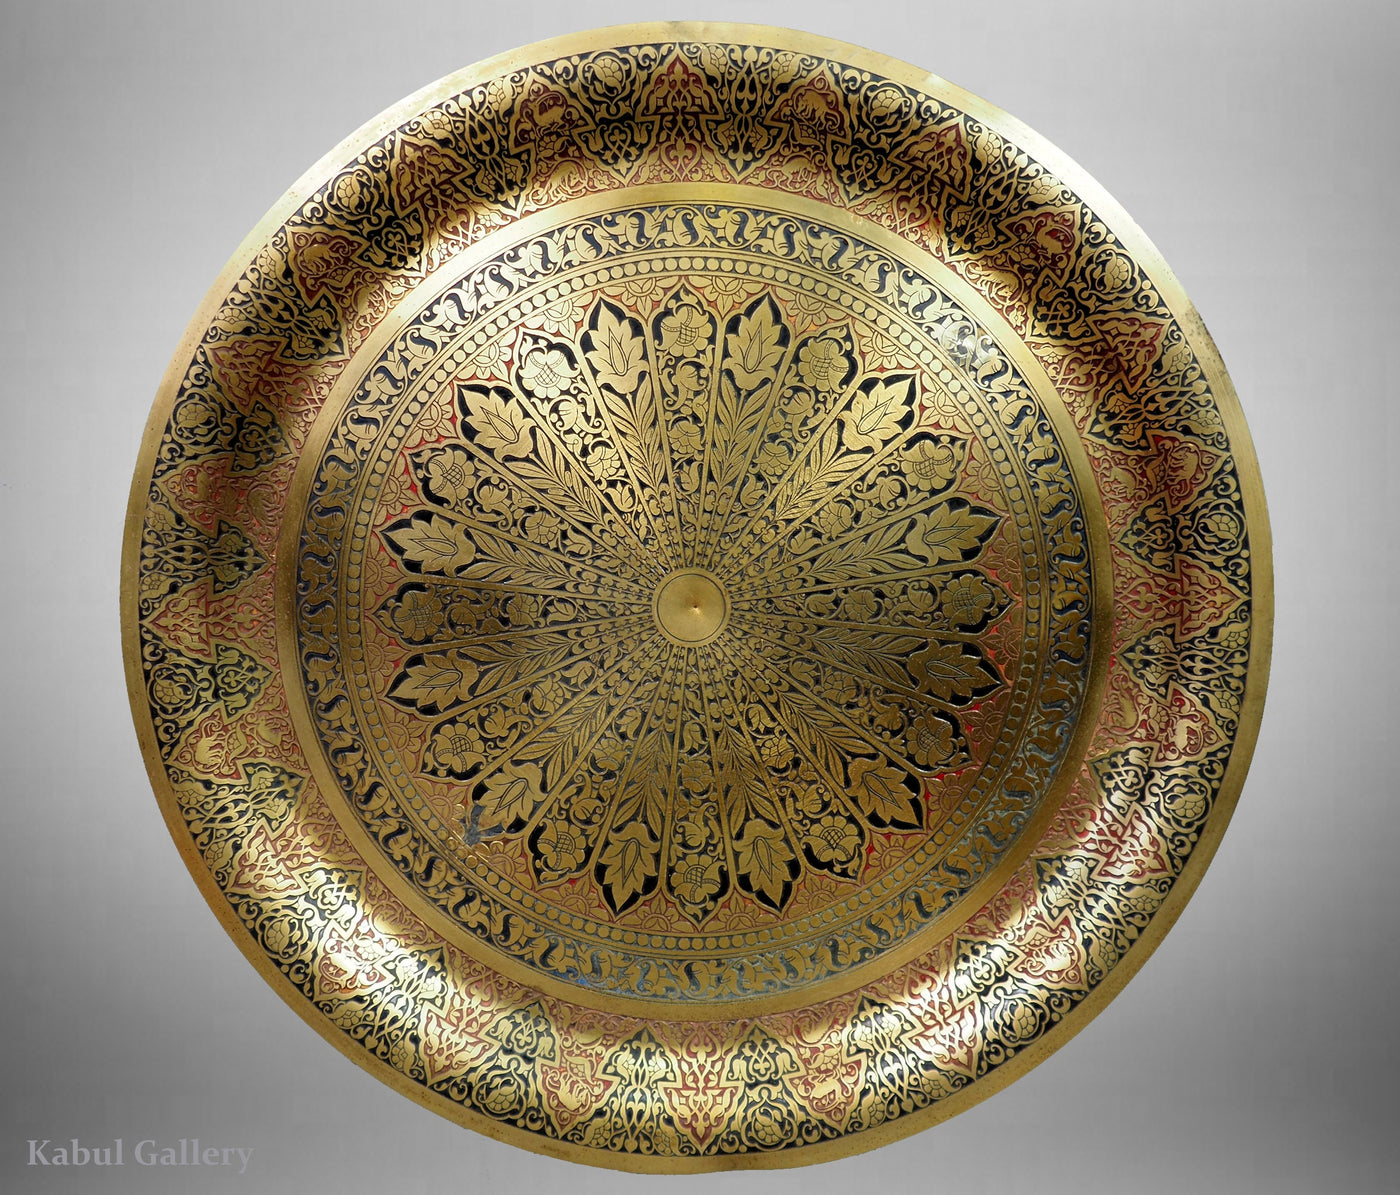 60 cm Ø antik osmanische islamische ägyptisch marokkanisch orient messing tablett Teetisch Teller beisteltisch tisch aus Ägypten No:21/5  Orientsbazar   